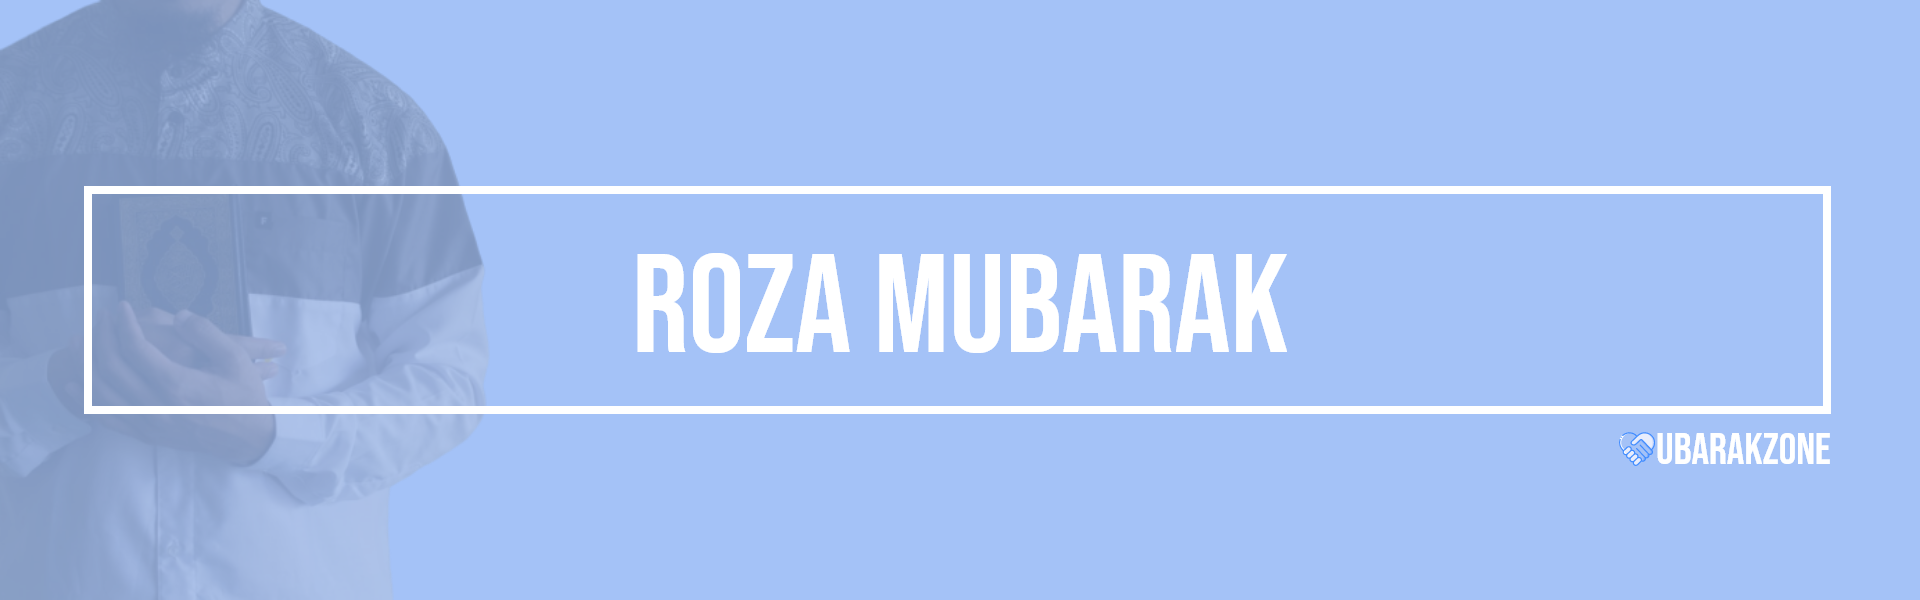 roza mubarak wishes messages